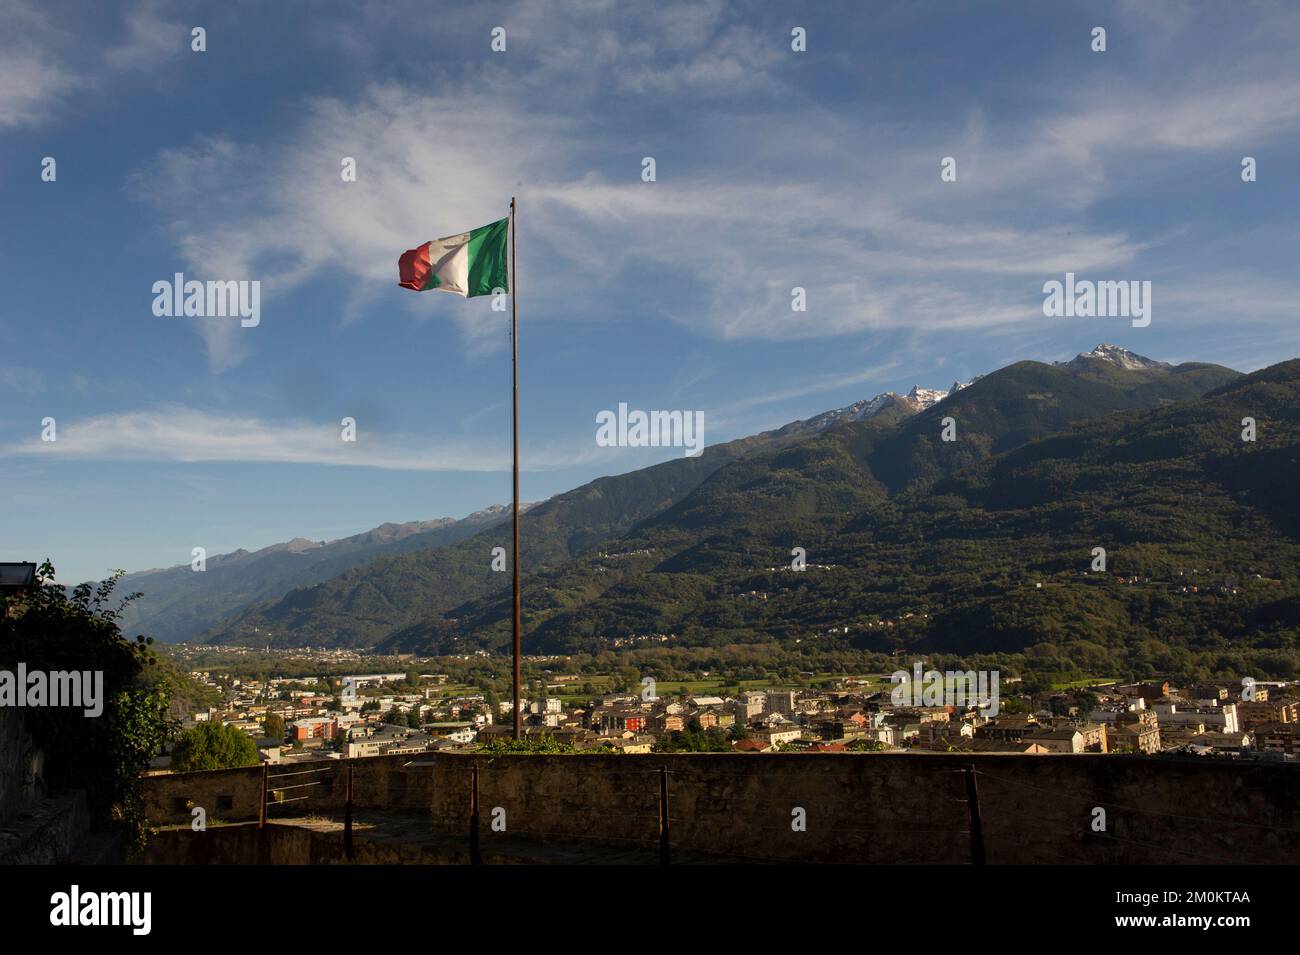 Europe, Italie, Lombardie, Valtellina, vues sur la ville de Sondrio Banque D'Images